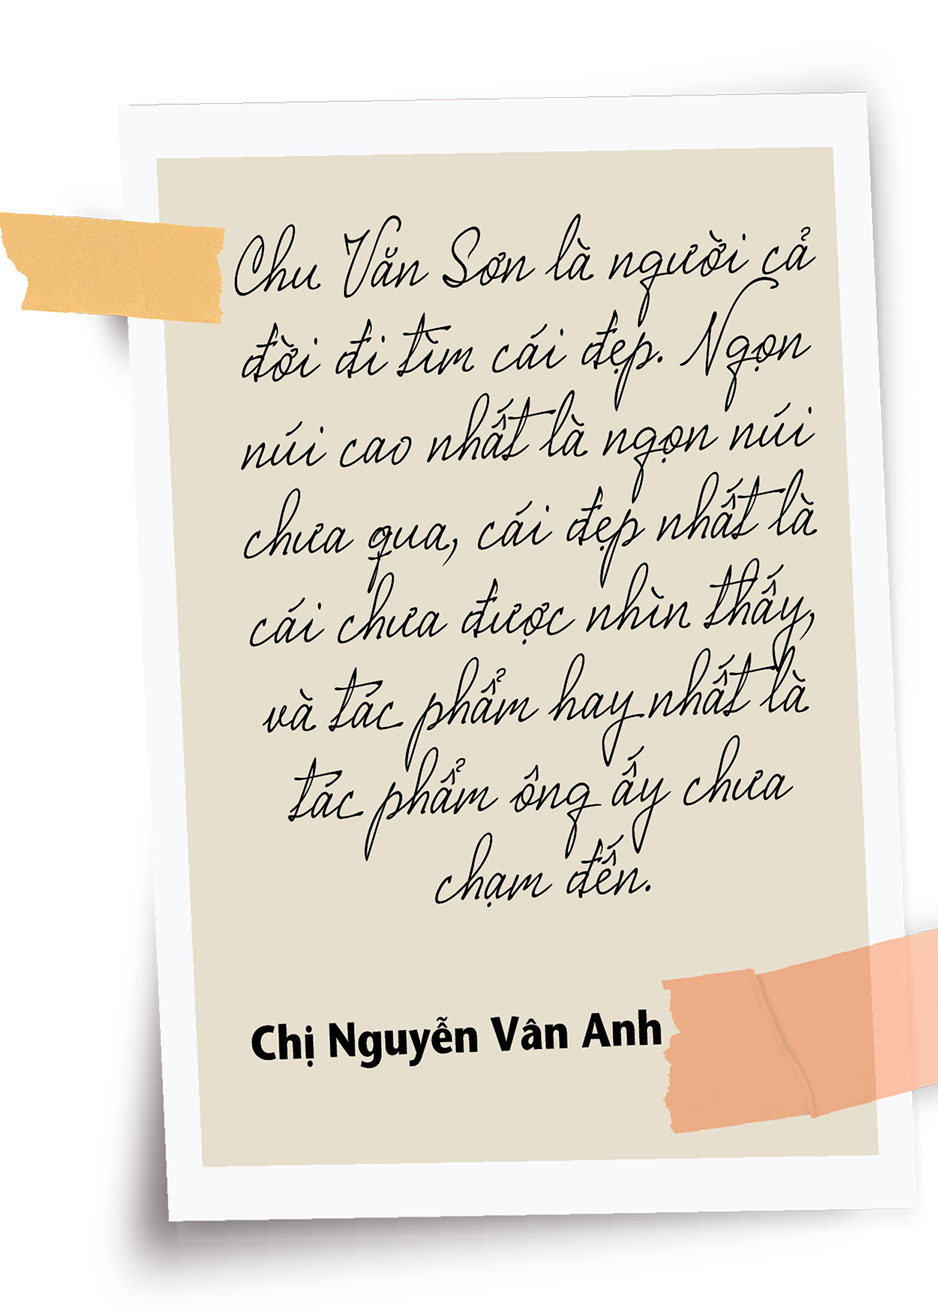 Chuyên gia về bạo lực giới và gia đình Nguyễn Vân Anh: Tình yêu là một môn học - Ảnh 24.